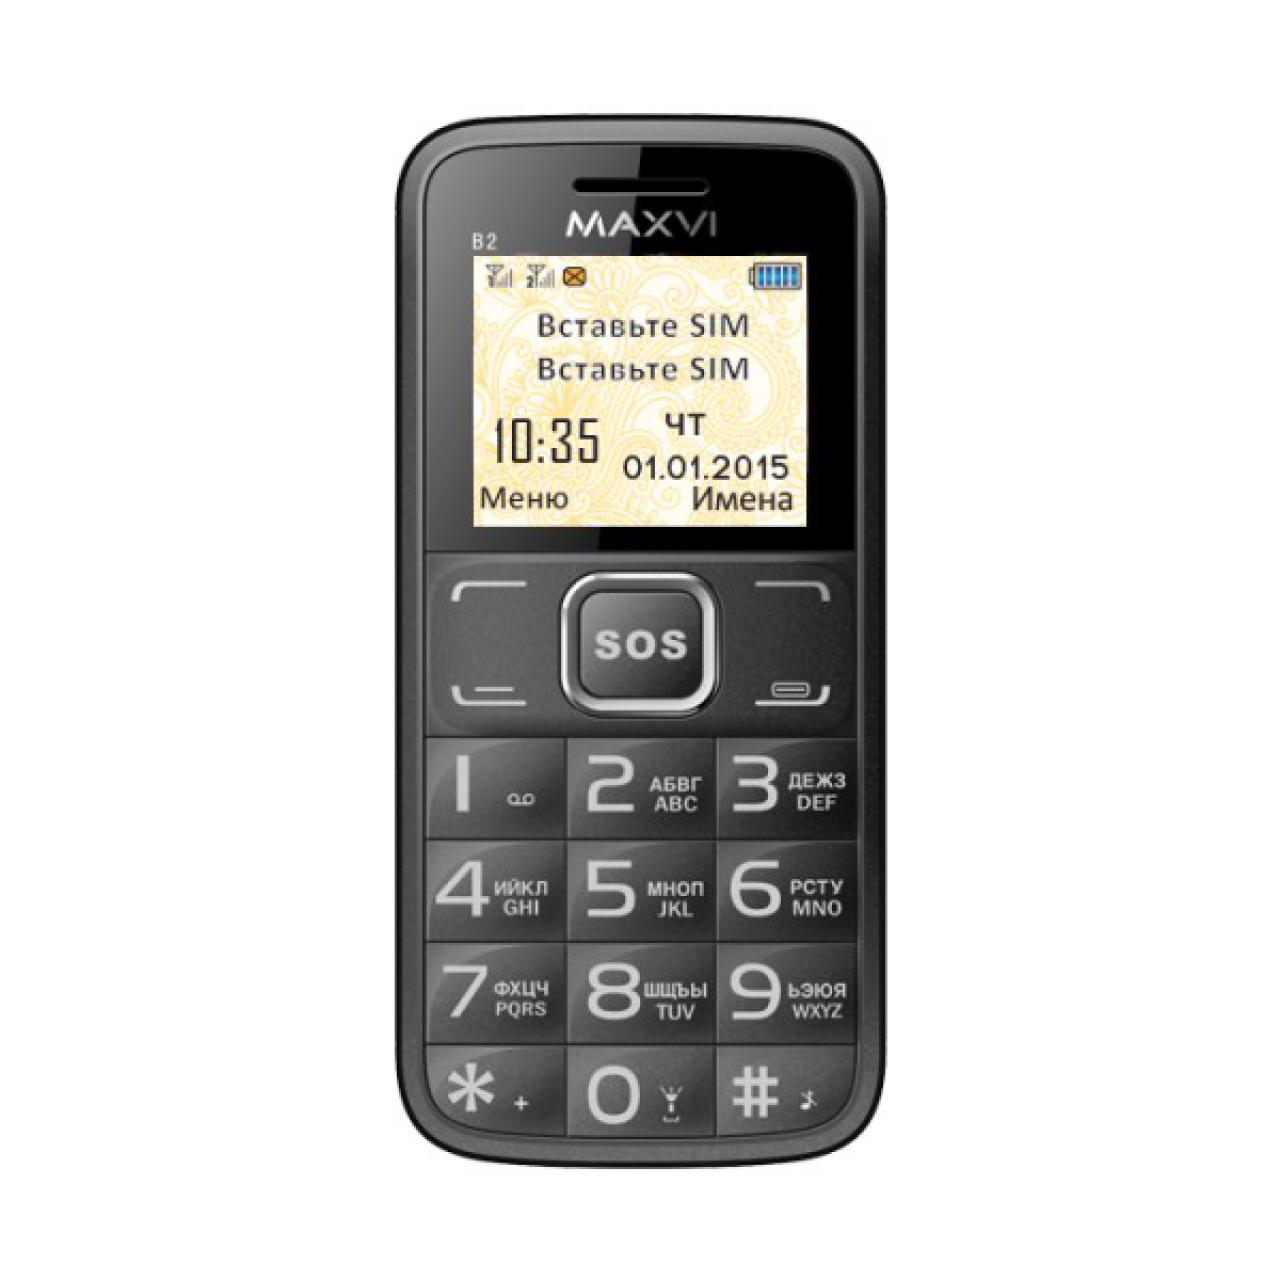 Простые телефоны магазинов. Мобильный телефон Maxvi b2 Black. Мобильный телефон Maxvi b2 coffe. Maxvi b2 Coffee (2 SIM). Maxvi b2 Grey.